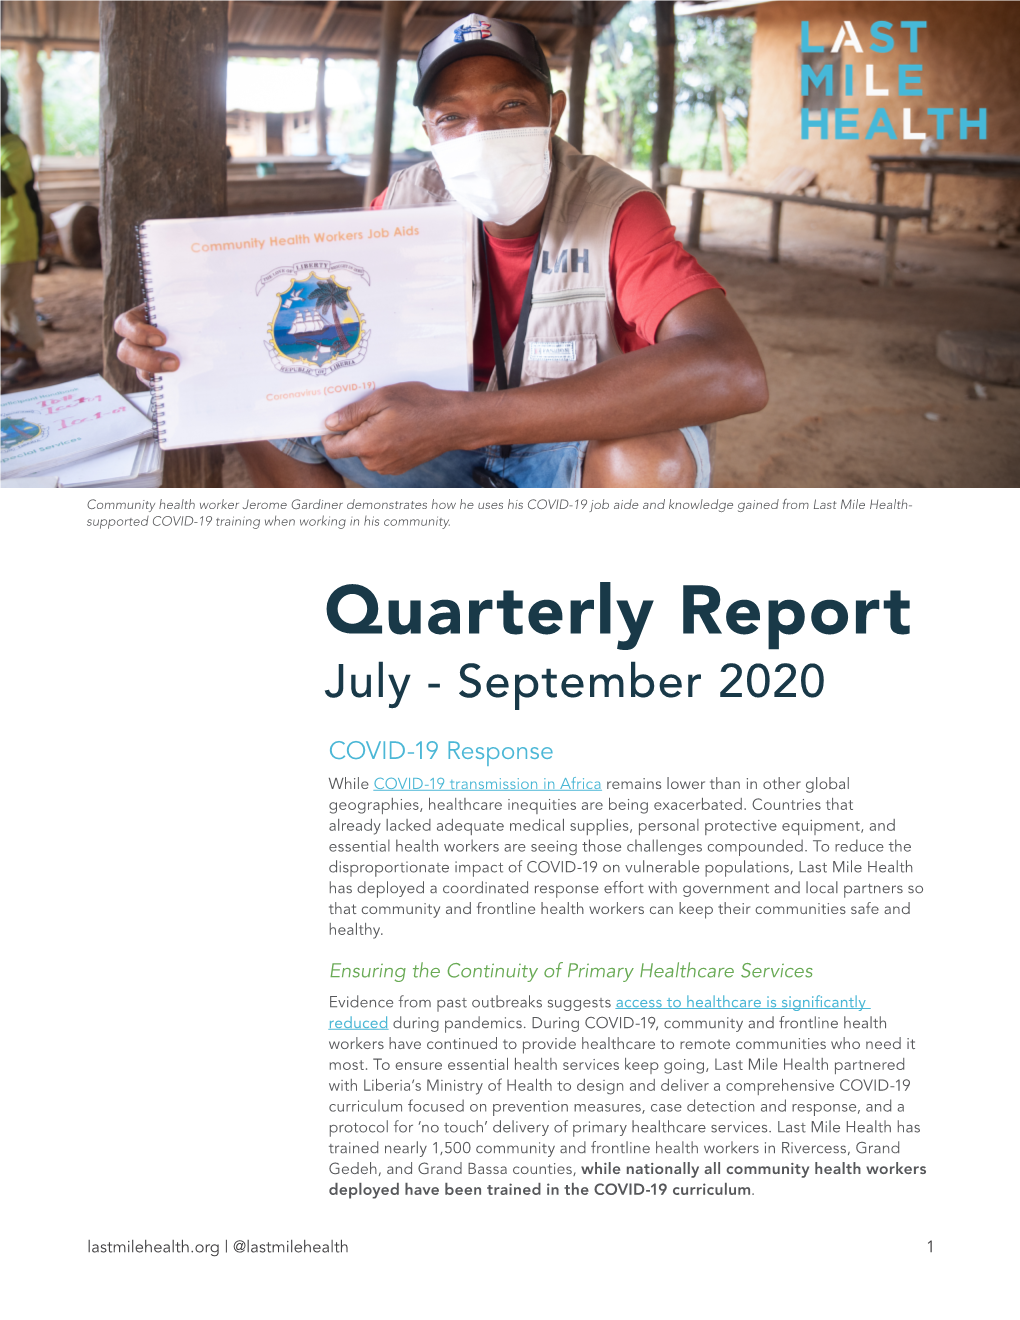 Quarterly Report July - September 2020